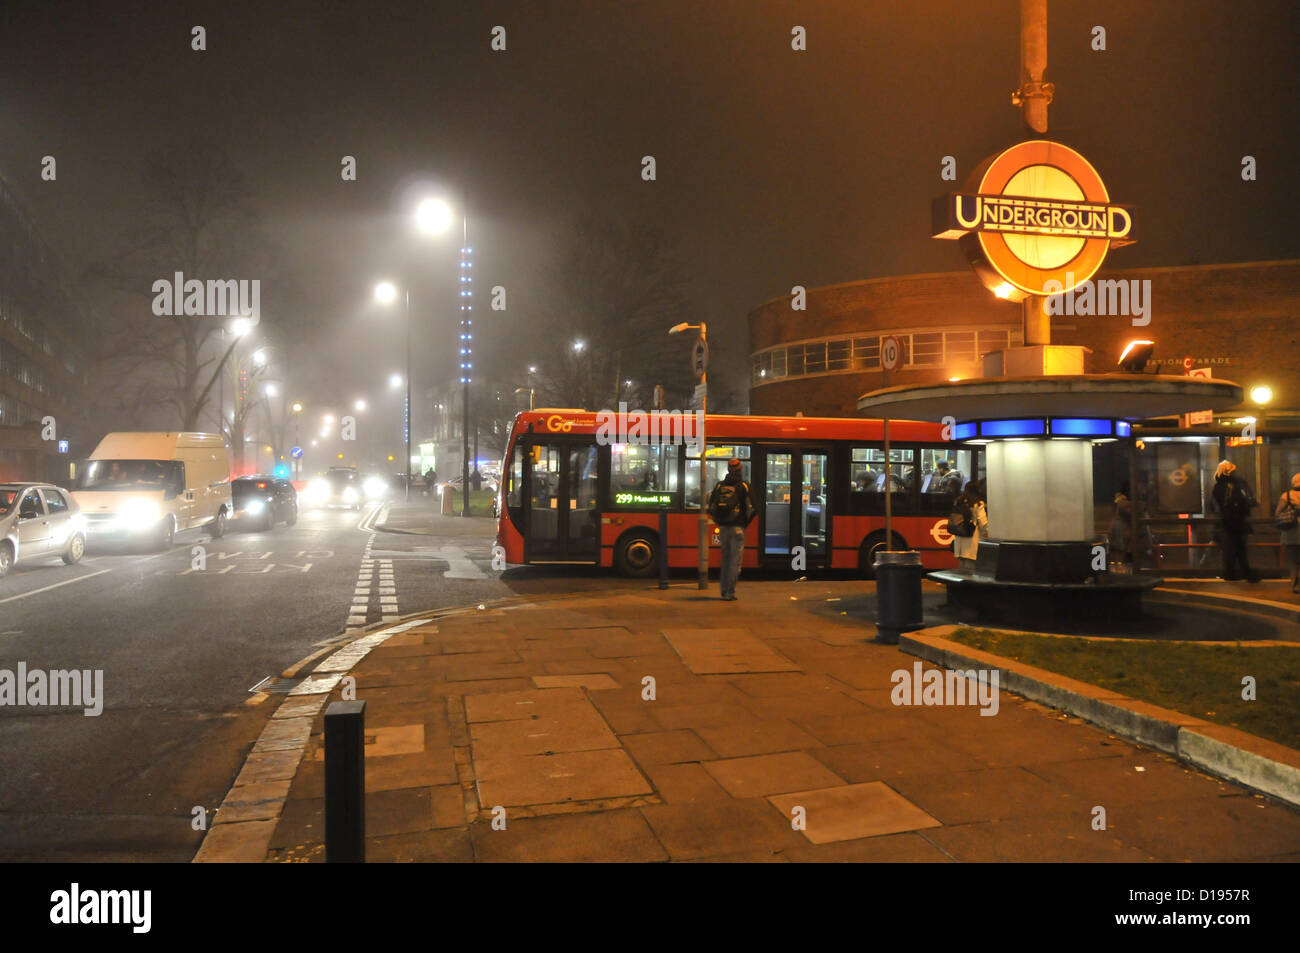 Southgate, Enfield, London, UK. 11. Dezember 2012.Southgate High Street und der U-Bahn unterzeichnen im Nebel. Dichte Nebel in London Vororten einfrieren. Bildnachweis: Matthew Chattle / Alamy Live News Stockfoto